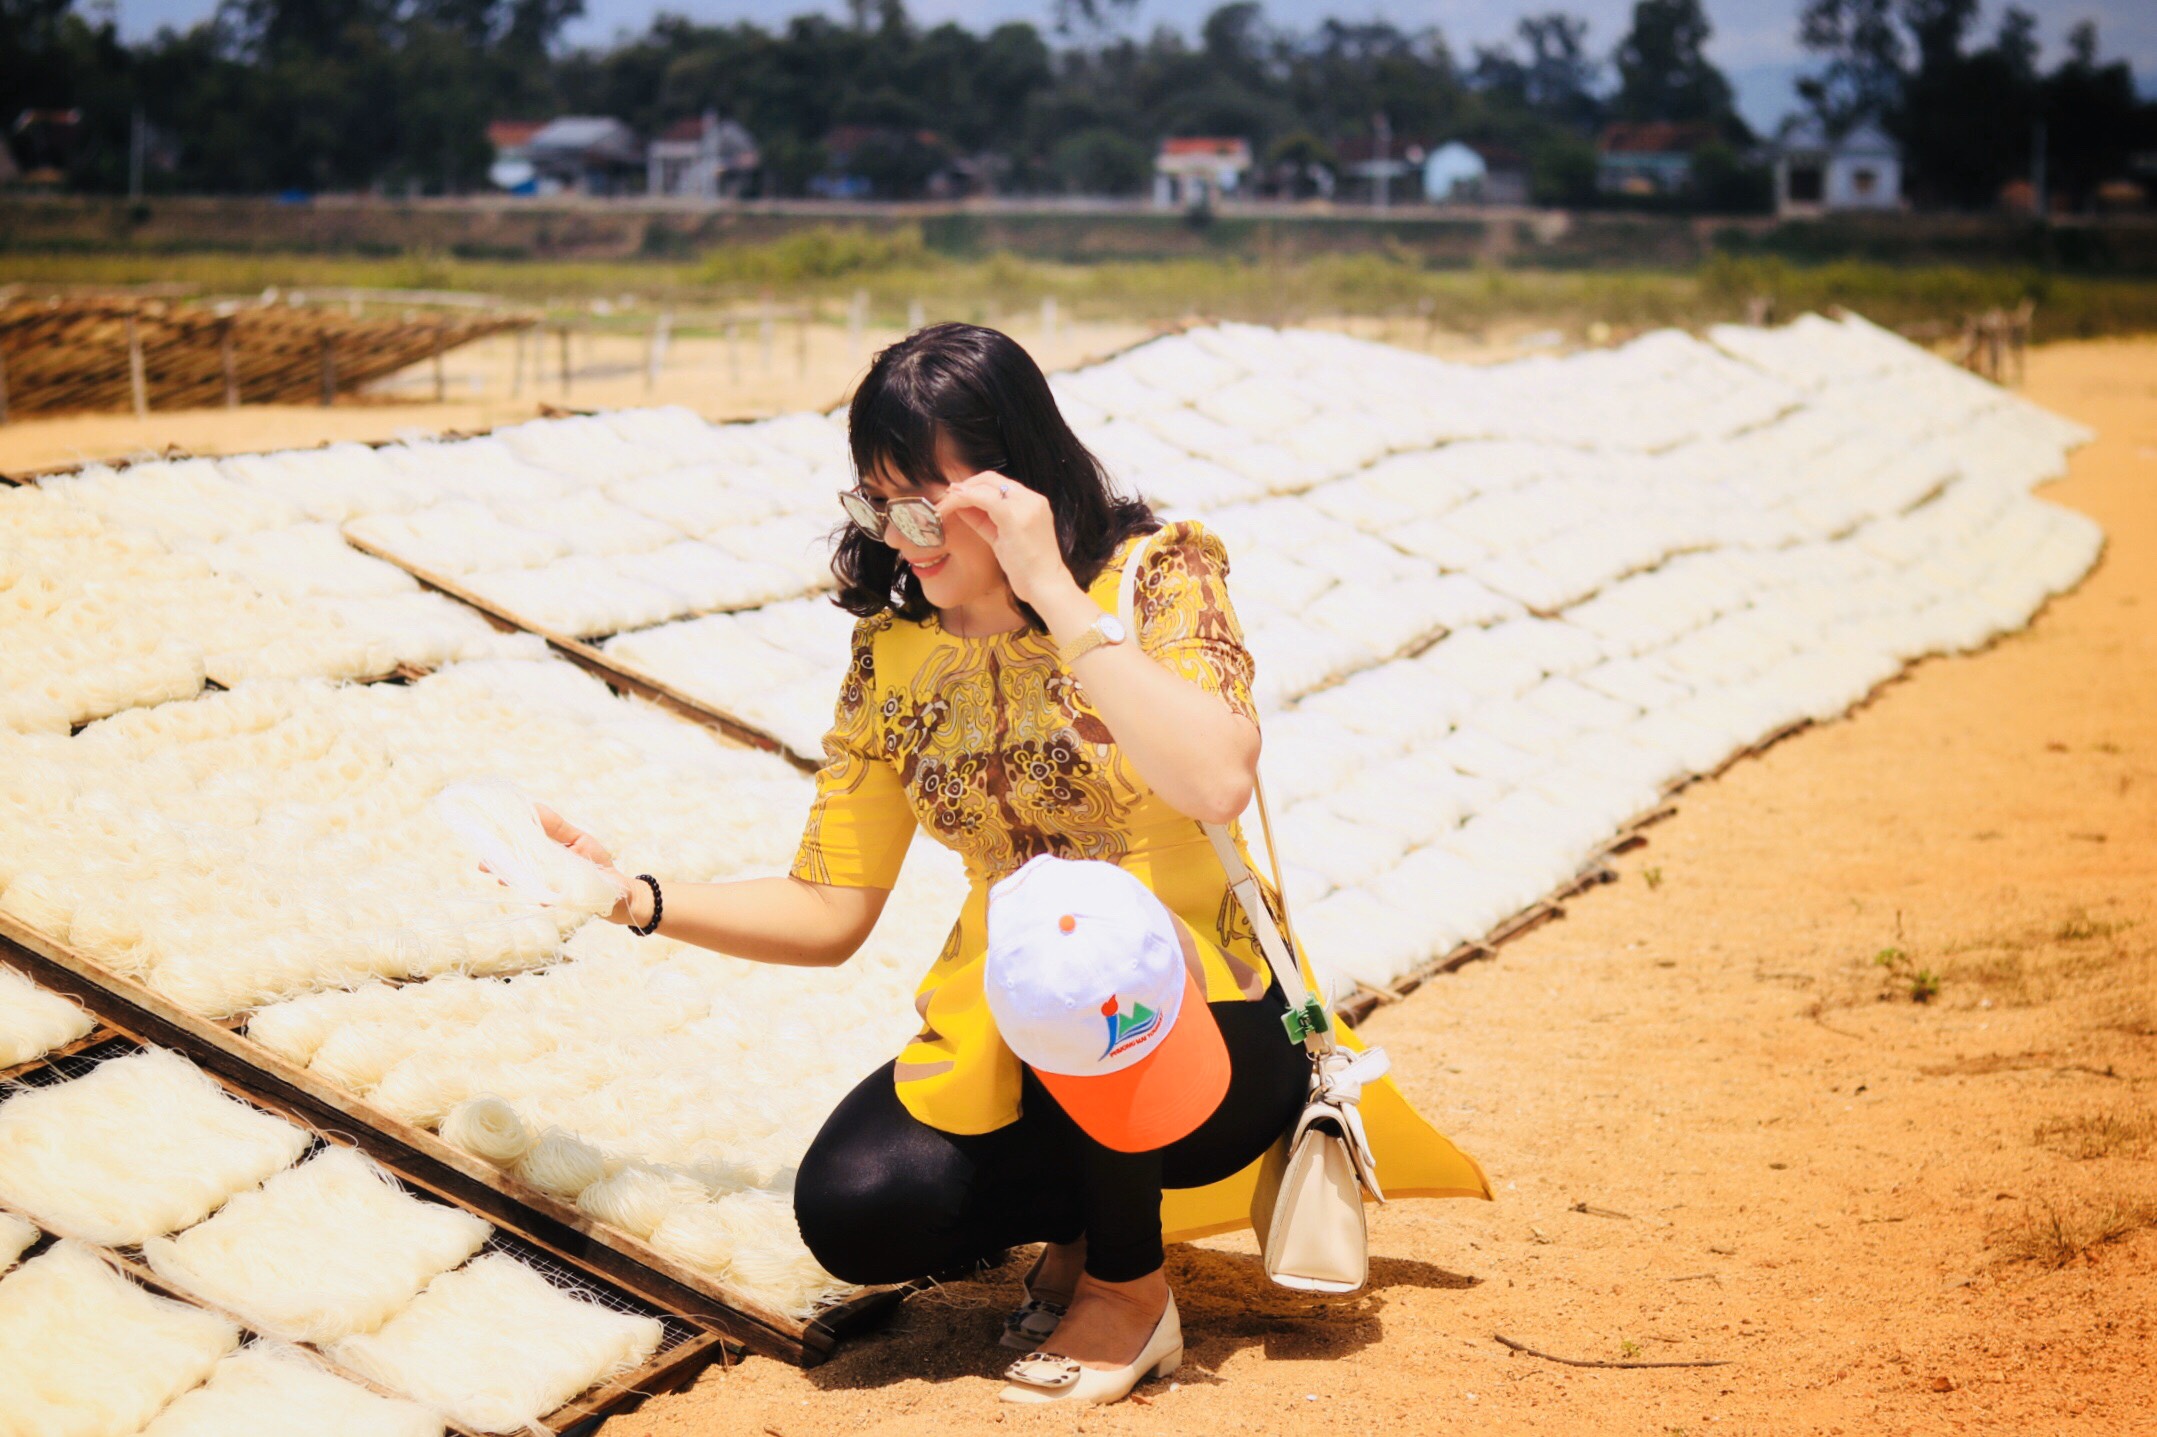 Hành trình khám làng nghề truyền thống Bình Định